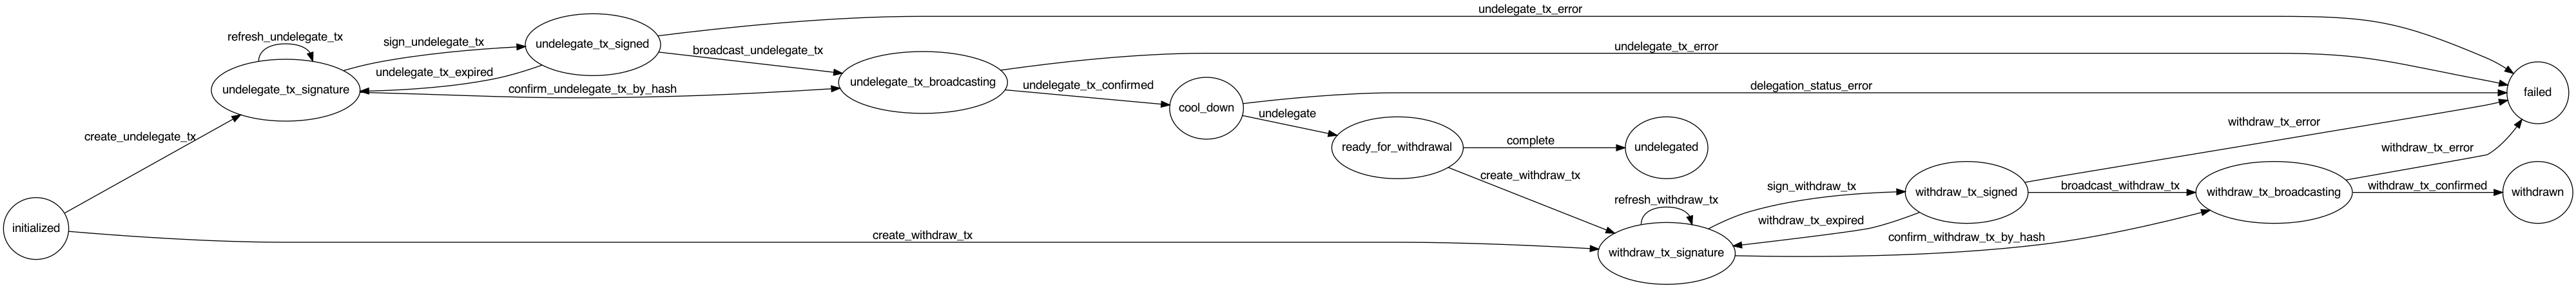 NEAR Unstaking Flow Diagram